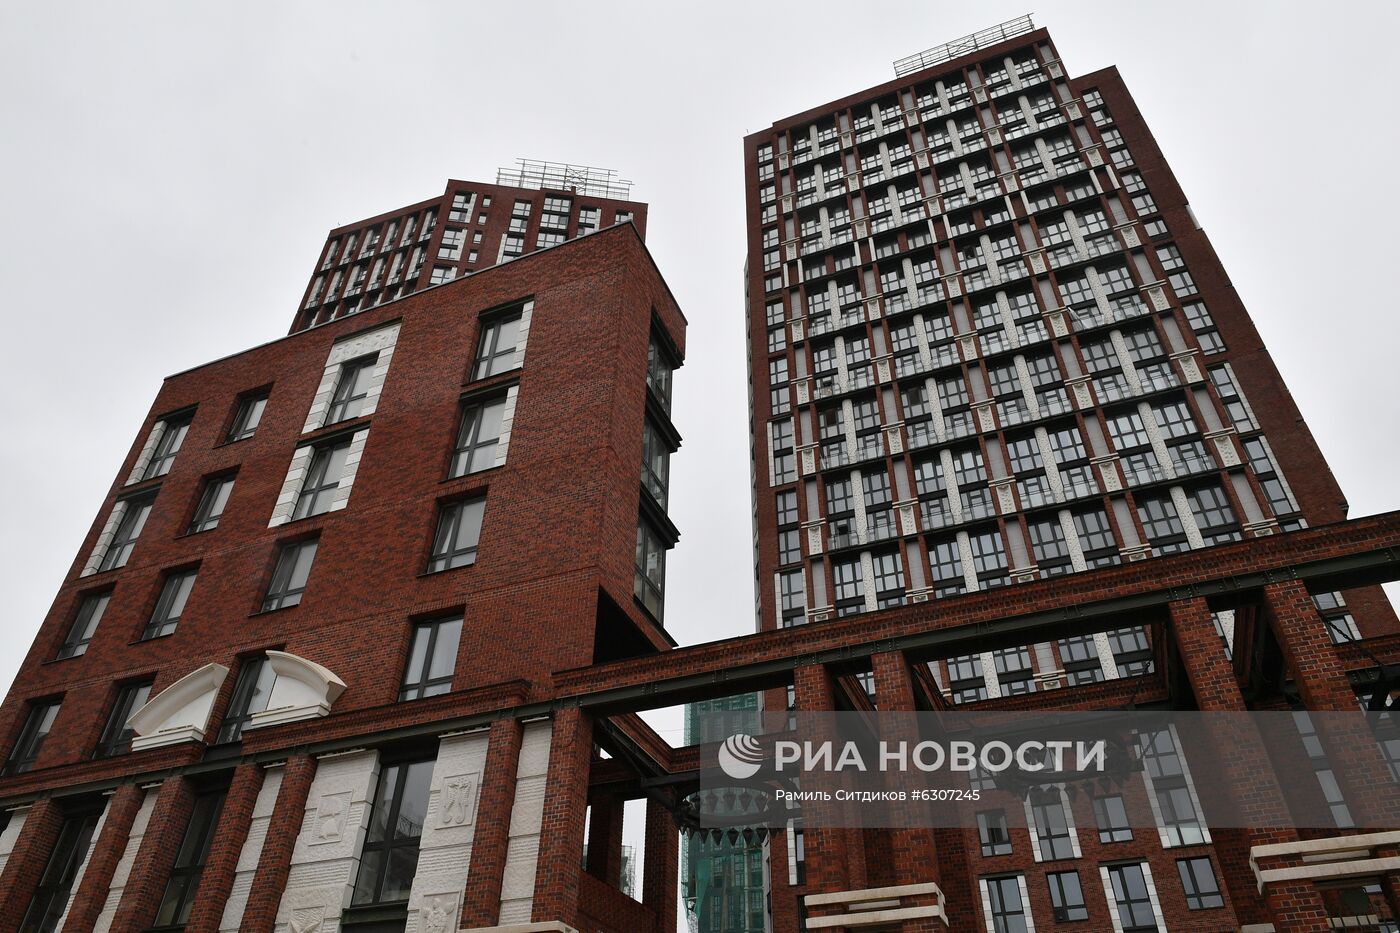 Мэр Москвы С. Собянин осмотрел ход реализации проекта реновации промзоны Братцево